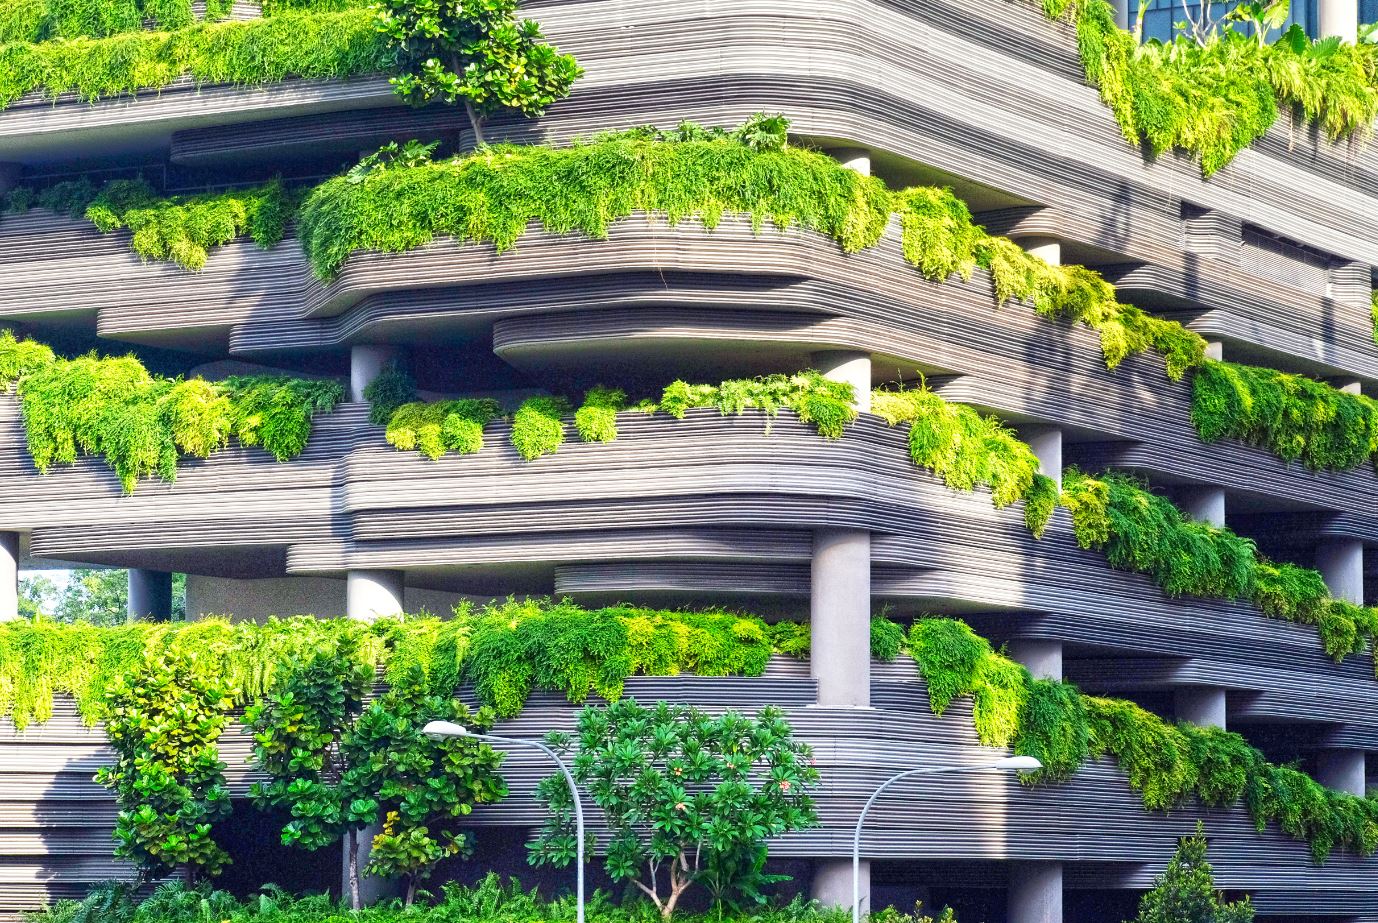 Edificio de arquitectura sostenible. Imagen del artículo de sostenibilidad del blog de Gradhermetic